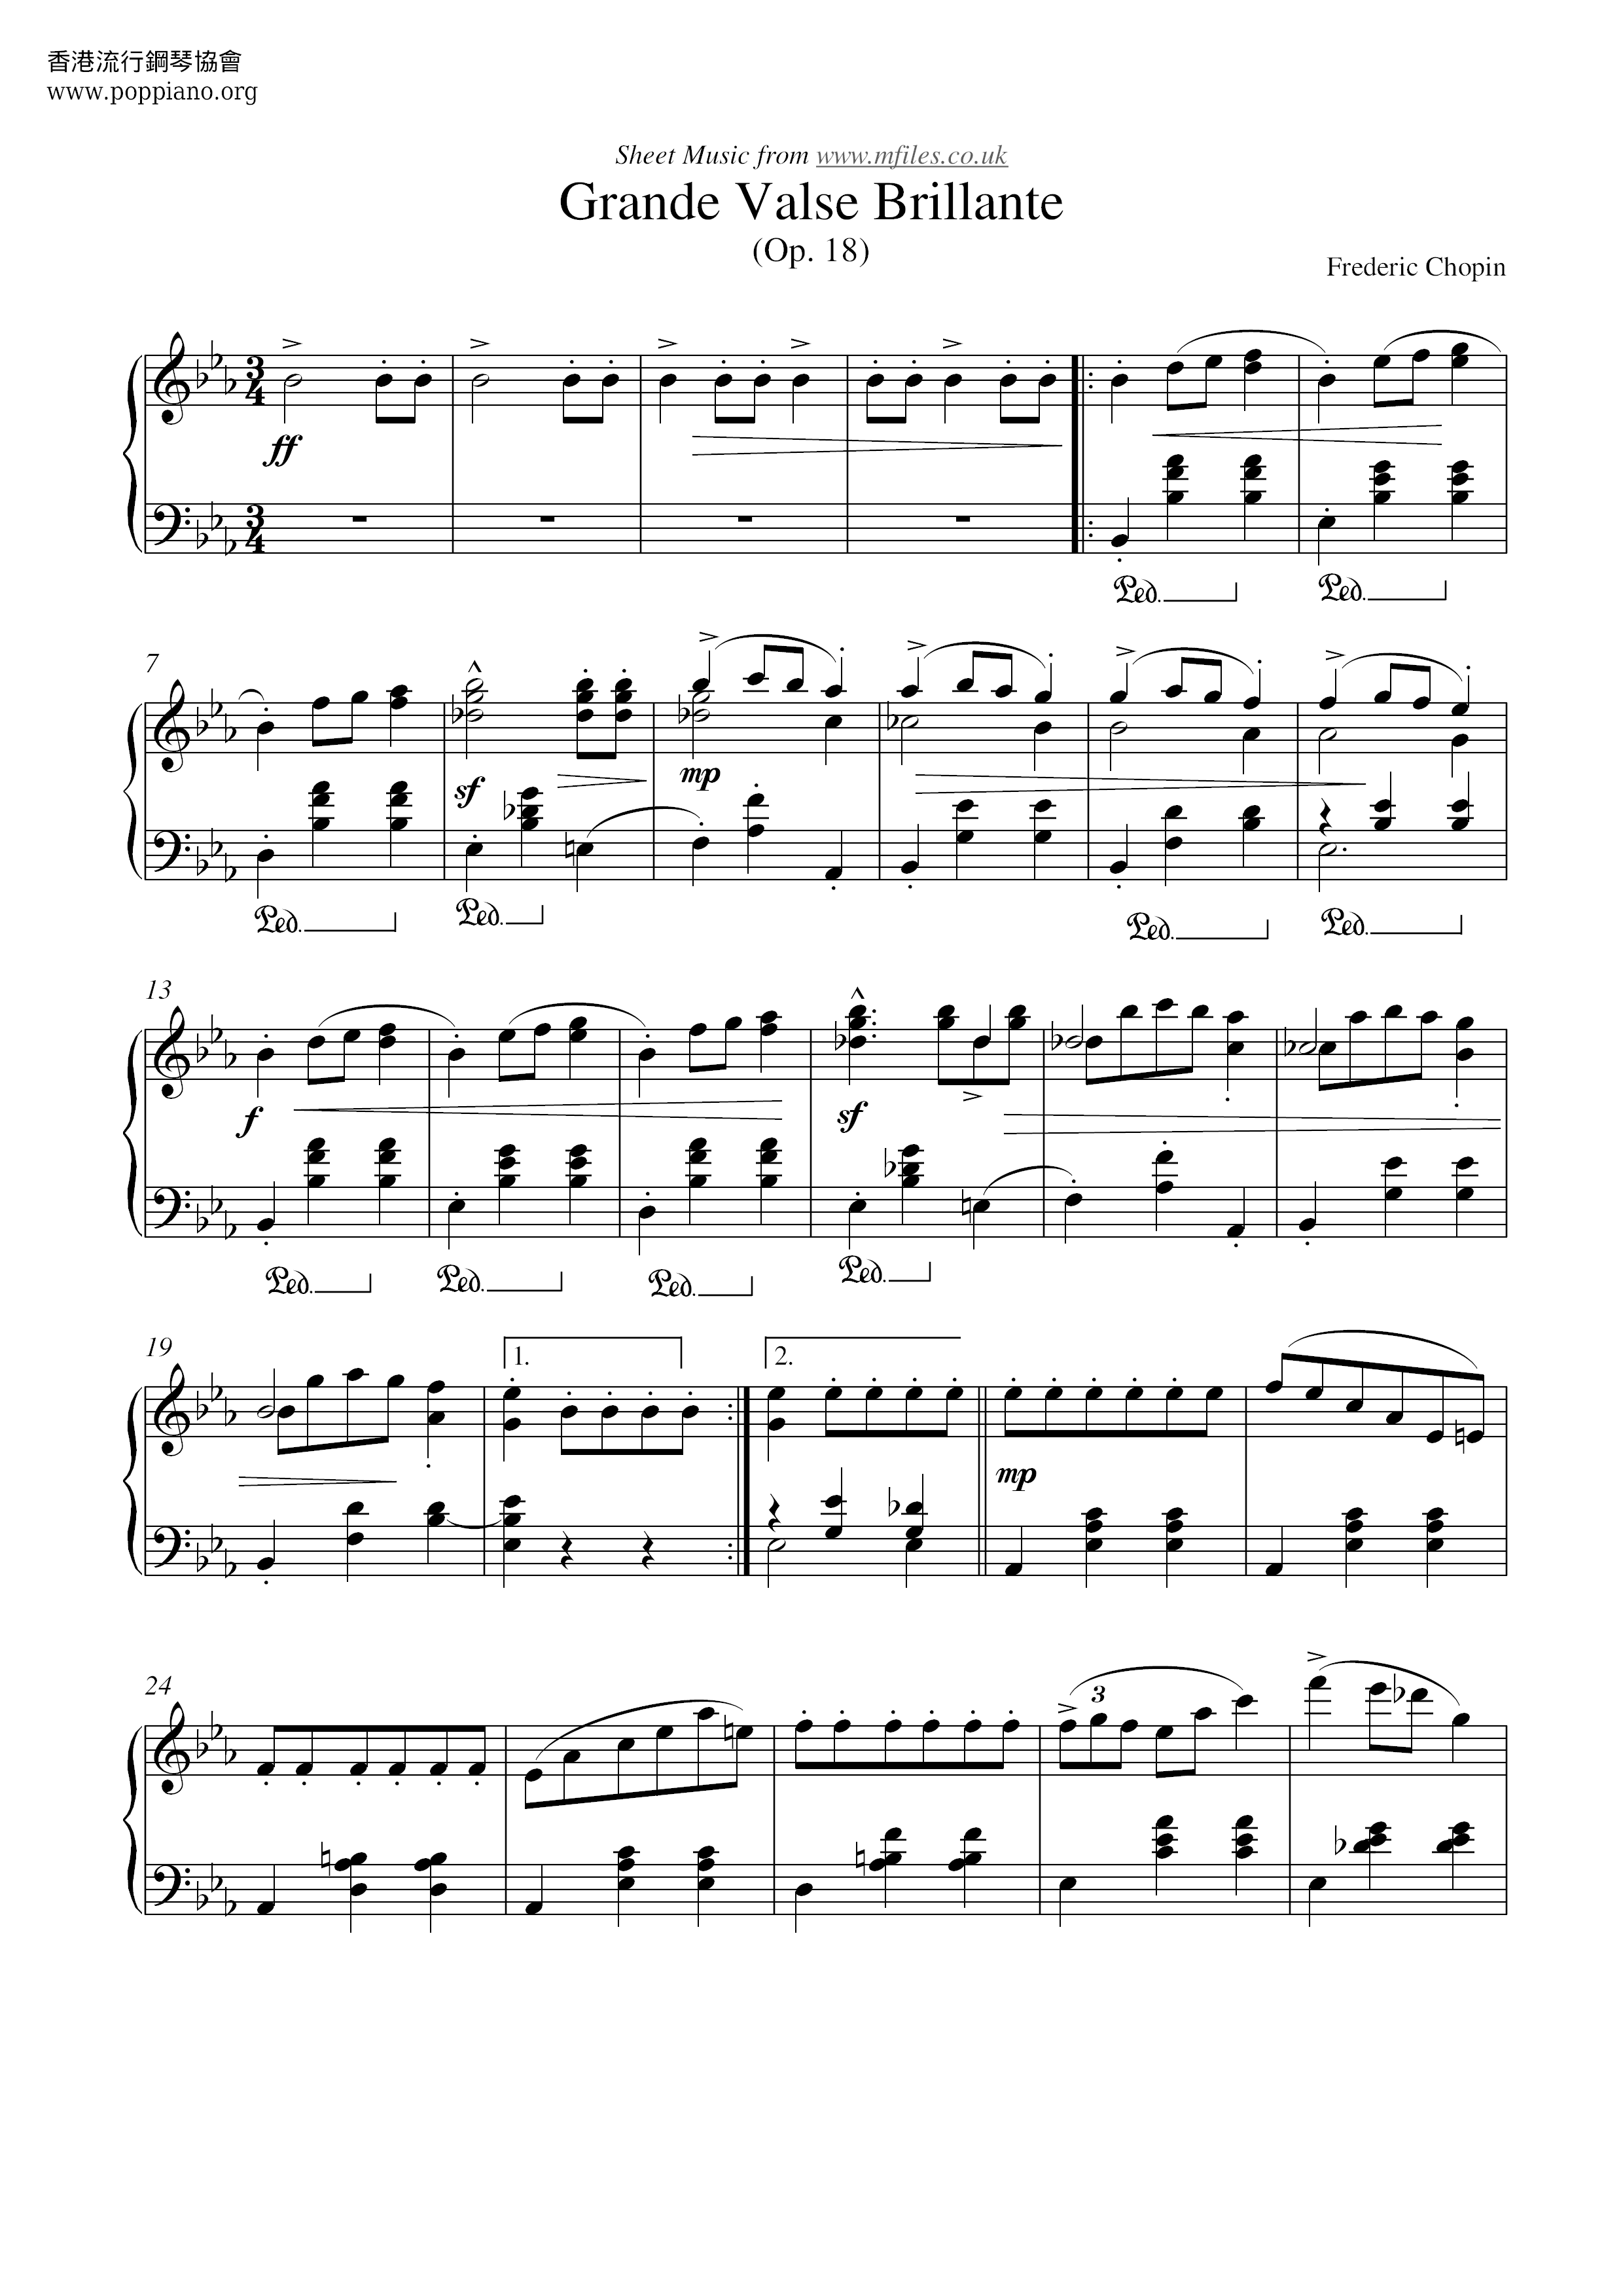 Op. 18, Grande Waltz Brillante琴譜